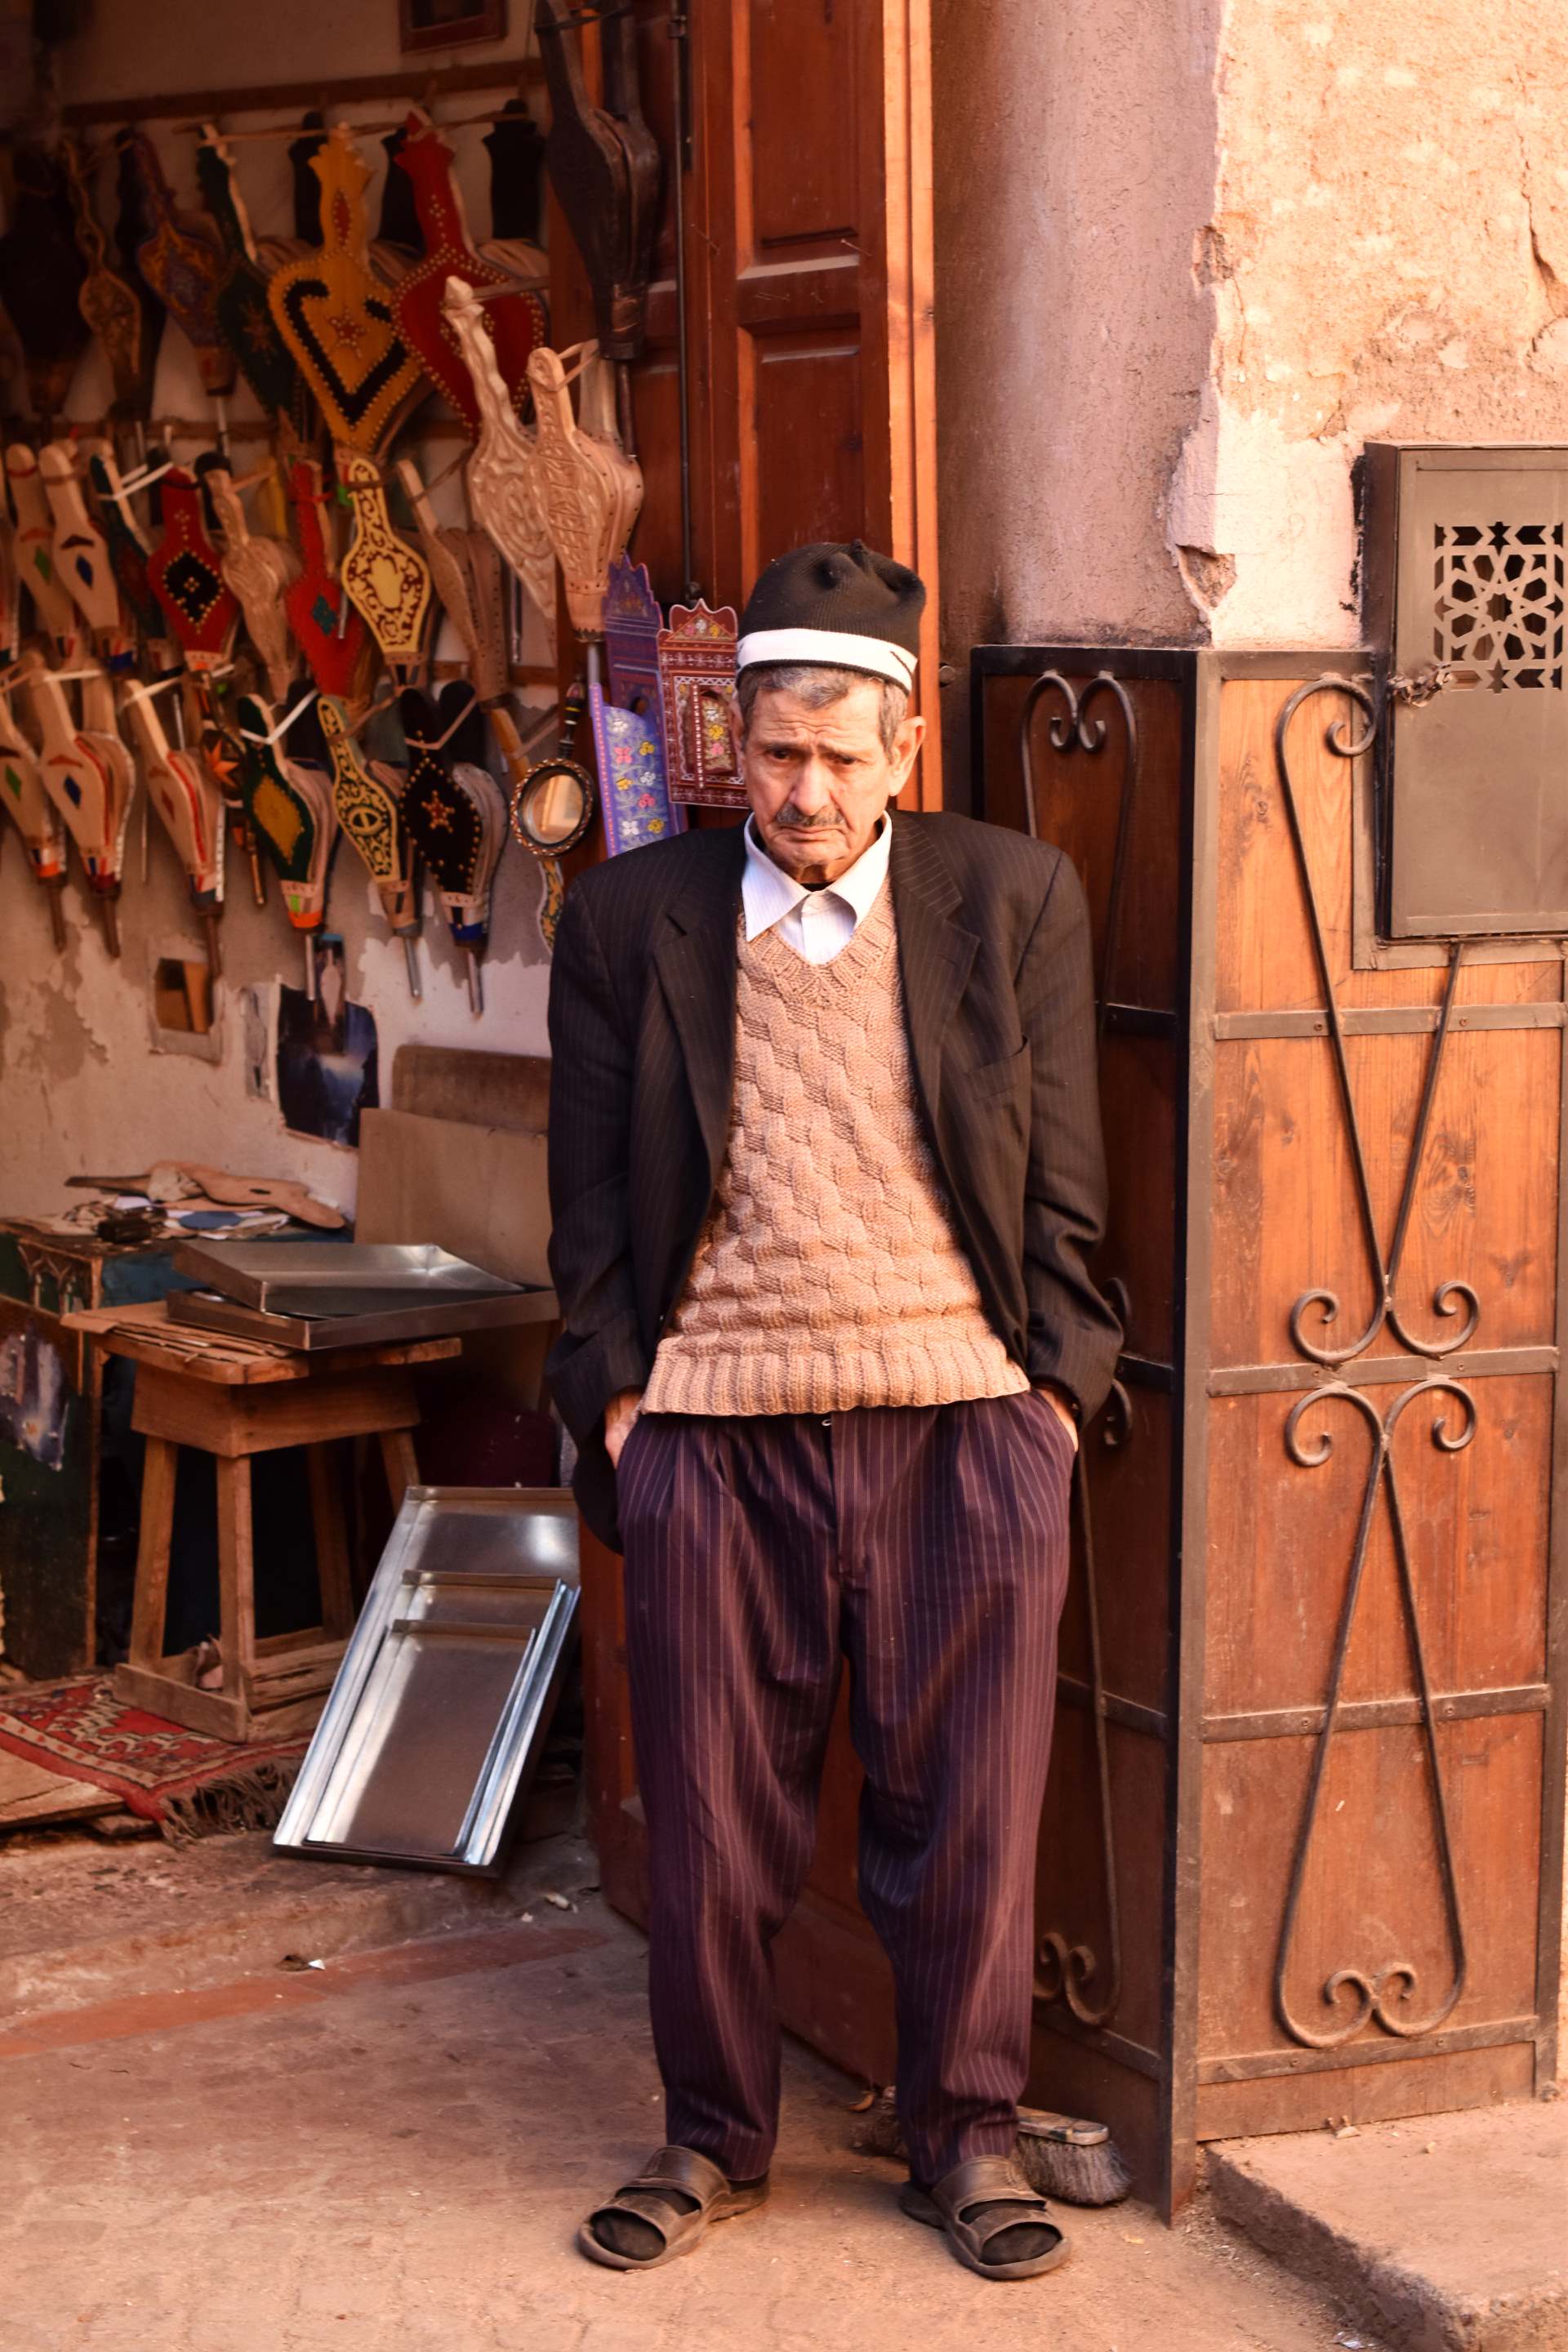 Stylish people of Morocco